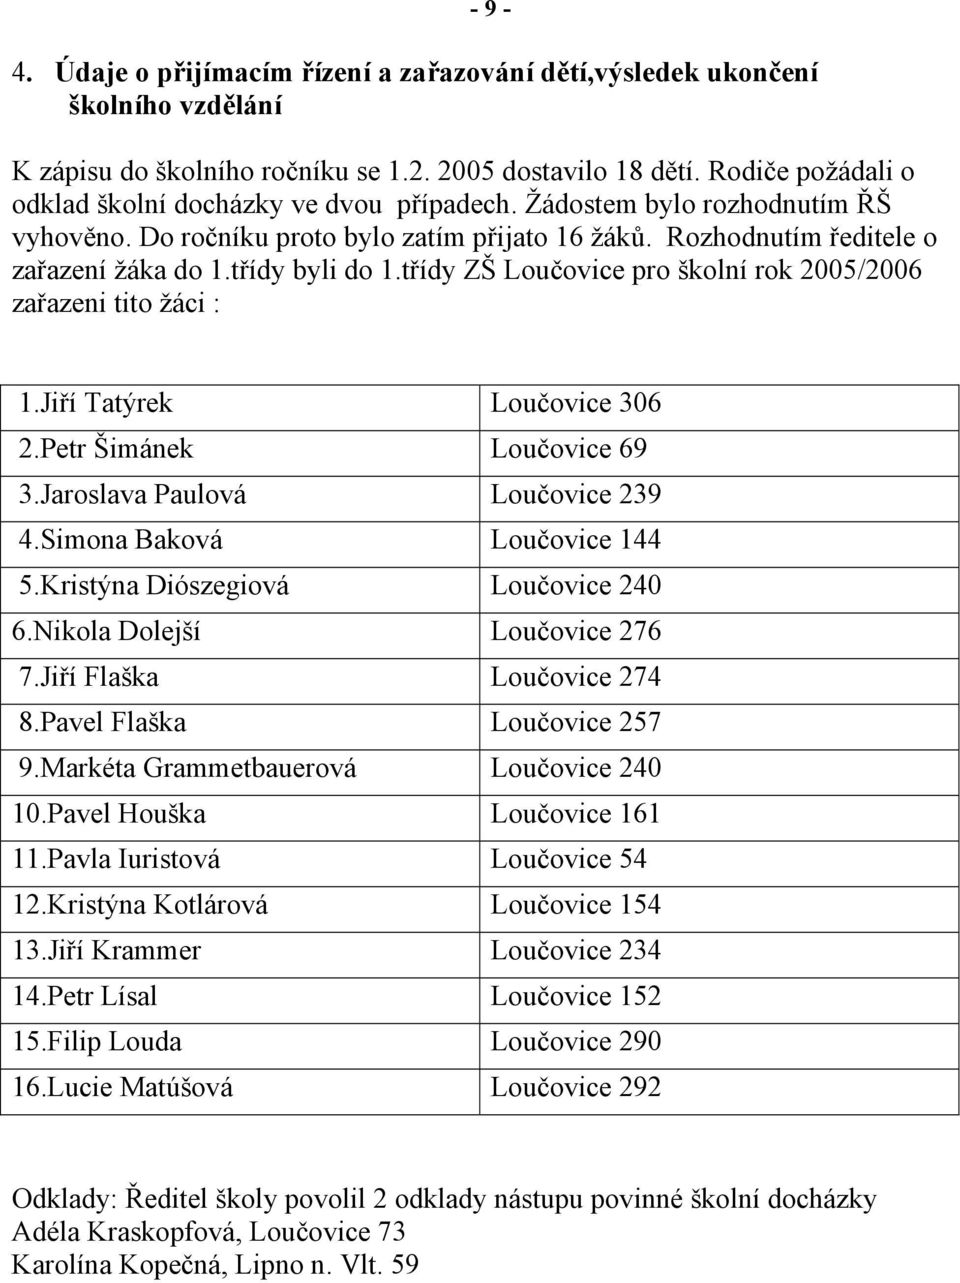 třídy byli do 1.třídy ZŠ Loučovice pro školní rok 2005/2006 zařazeni tito žáci : 1.Jiří Tatýrek Loučovice 306 2.Petr Šimánek Loučovice 69 3.Jaroslava Paulová Loučovice 239 4.